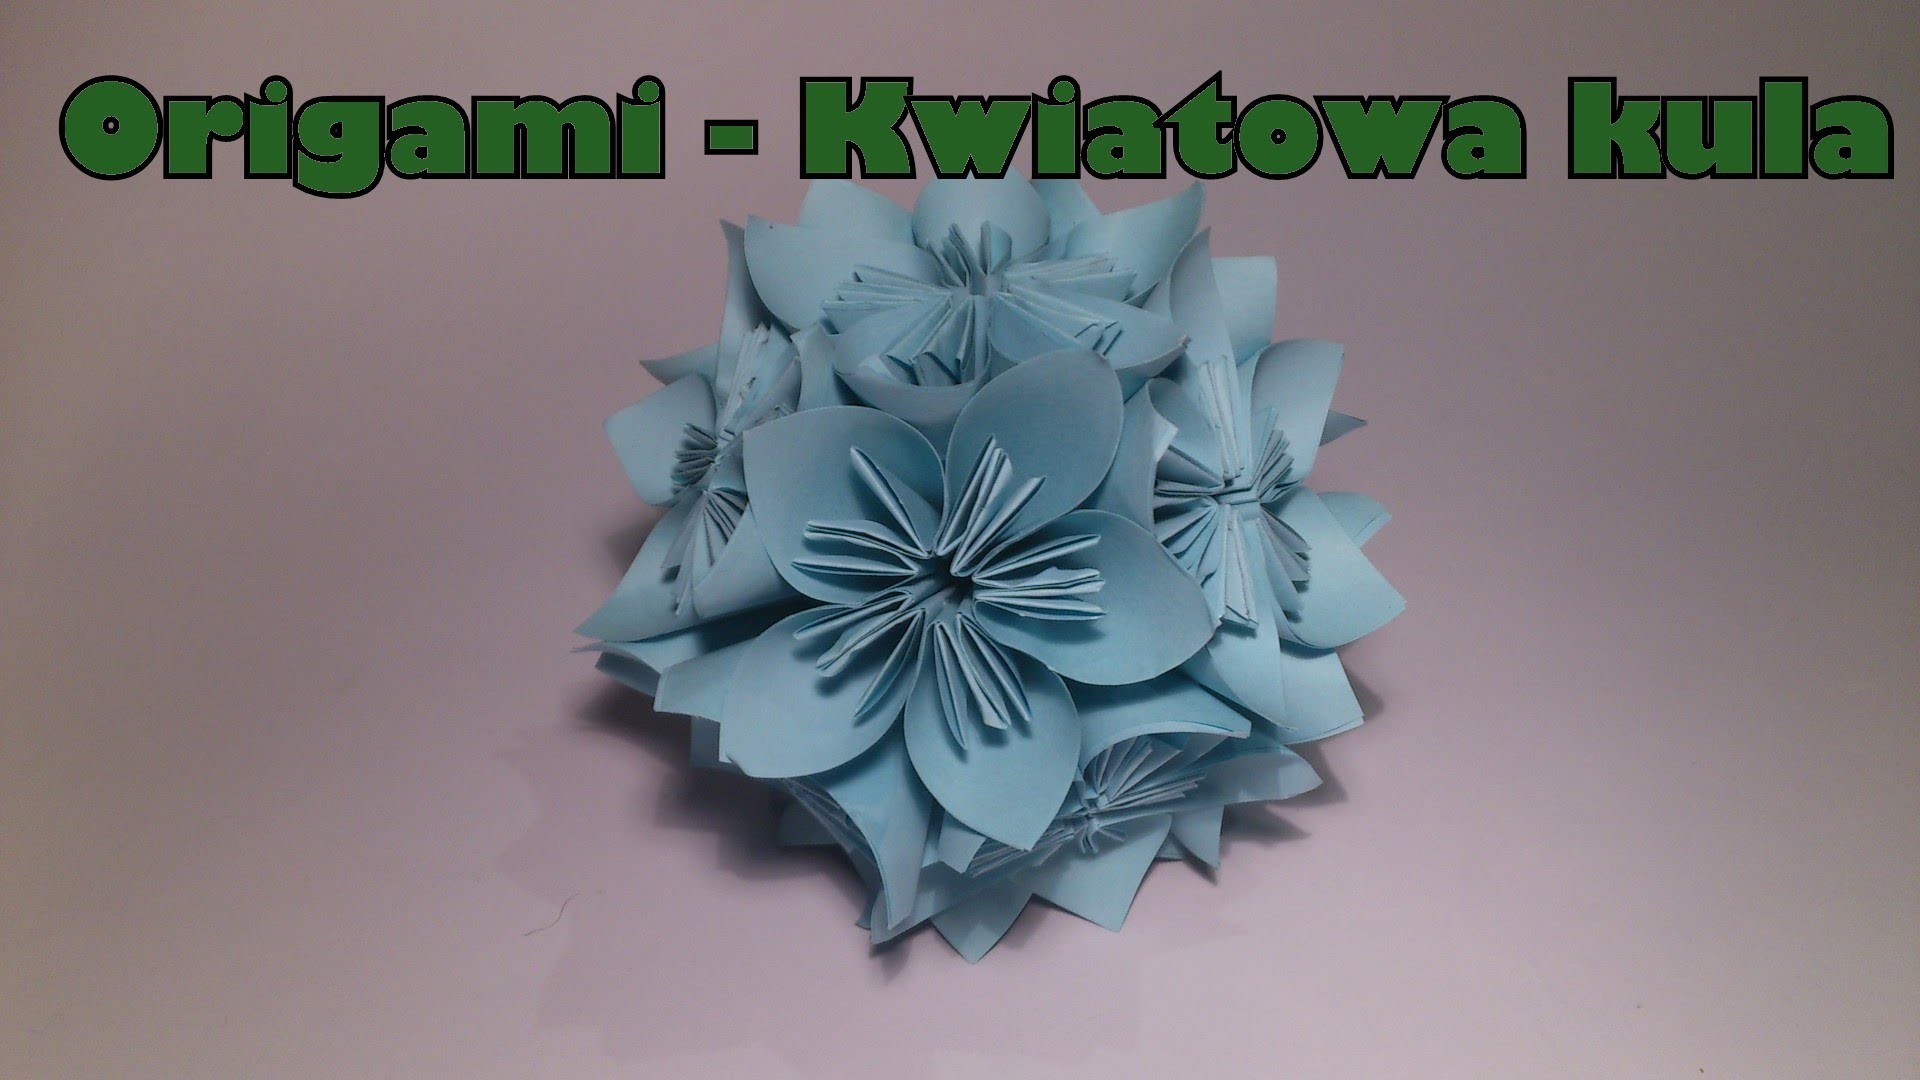 (Origami) - Kwiatowa kula